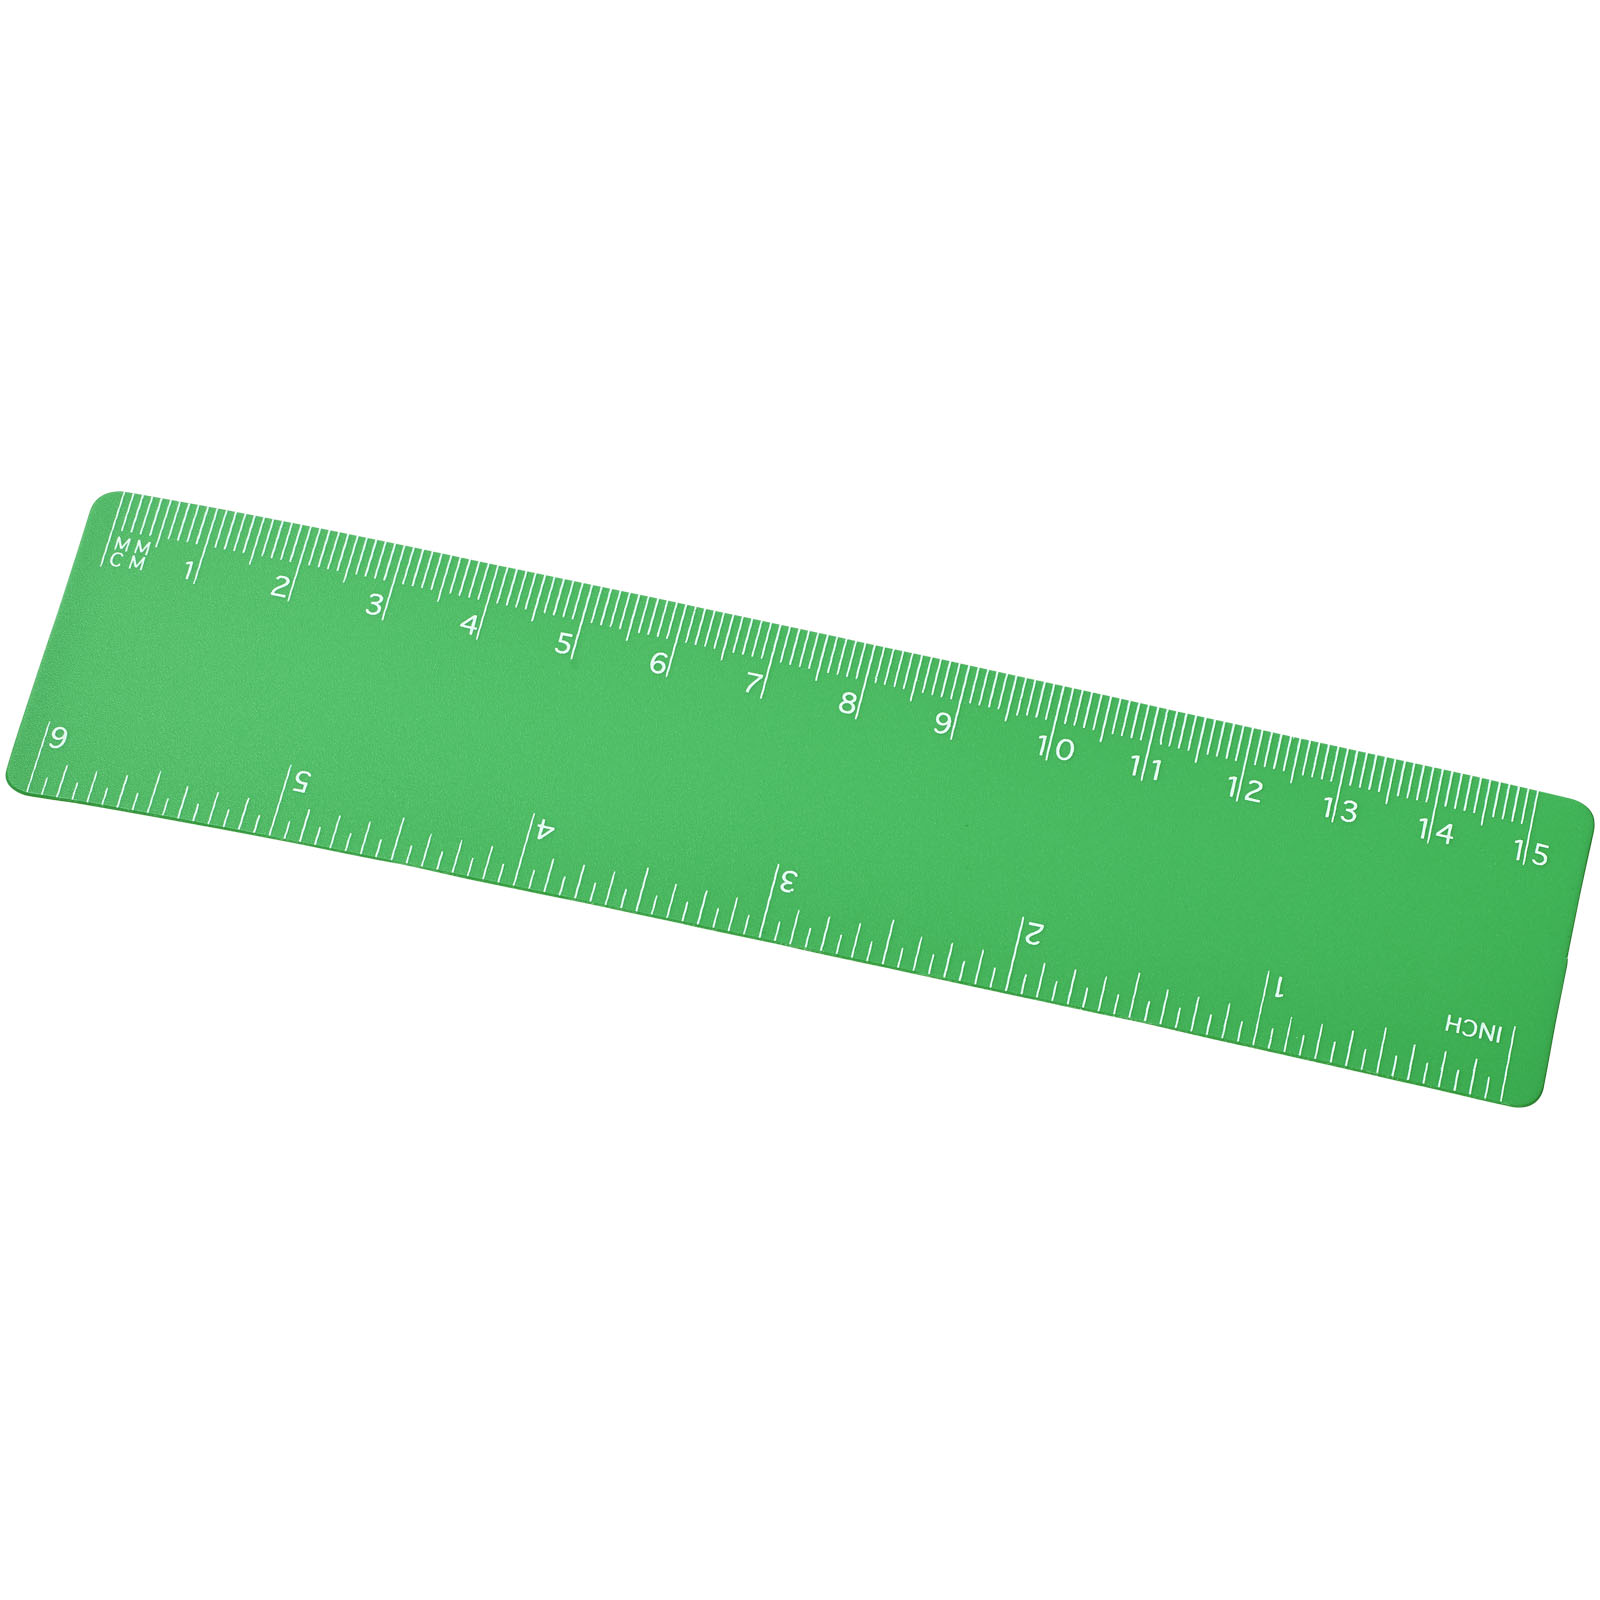 Advertising Desk Accessories - Rothko 15 cm plastic ruler - 0